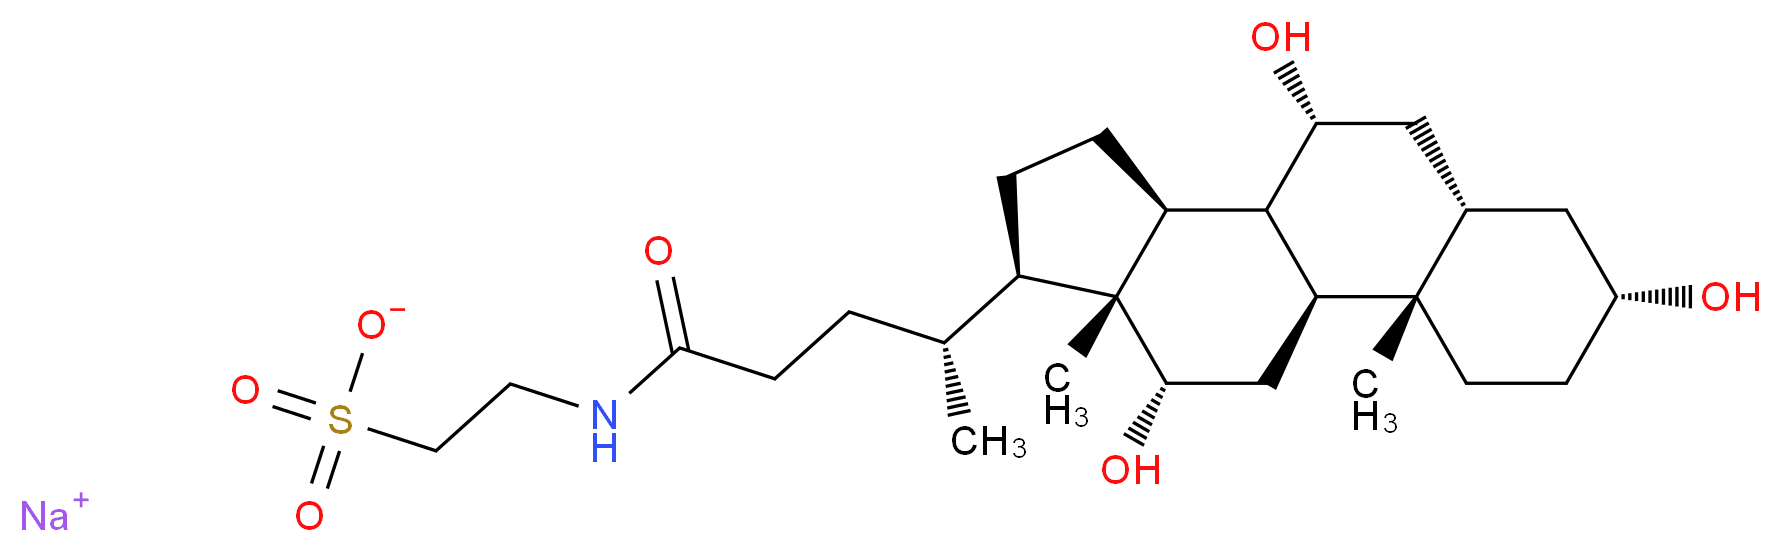 145-42-6 molecular structure